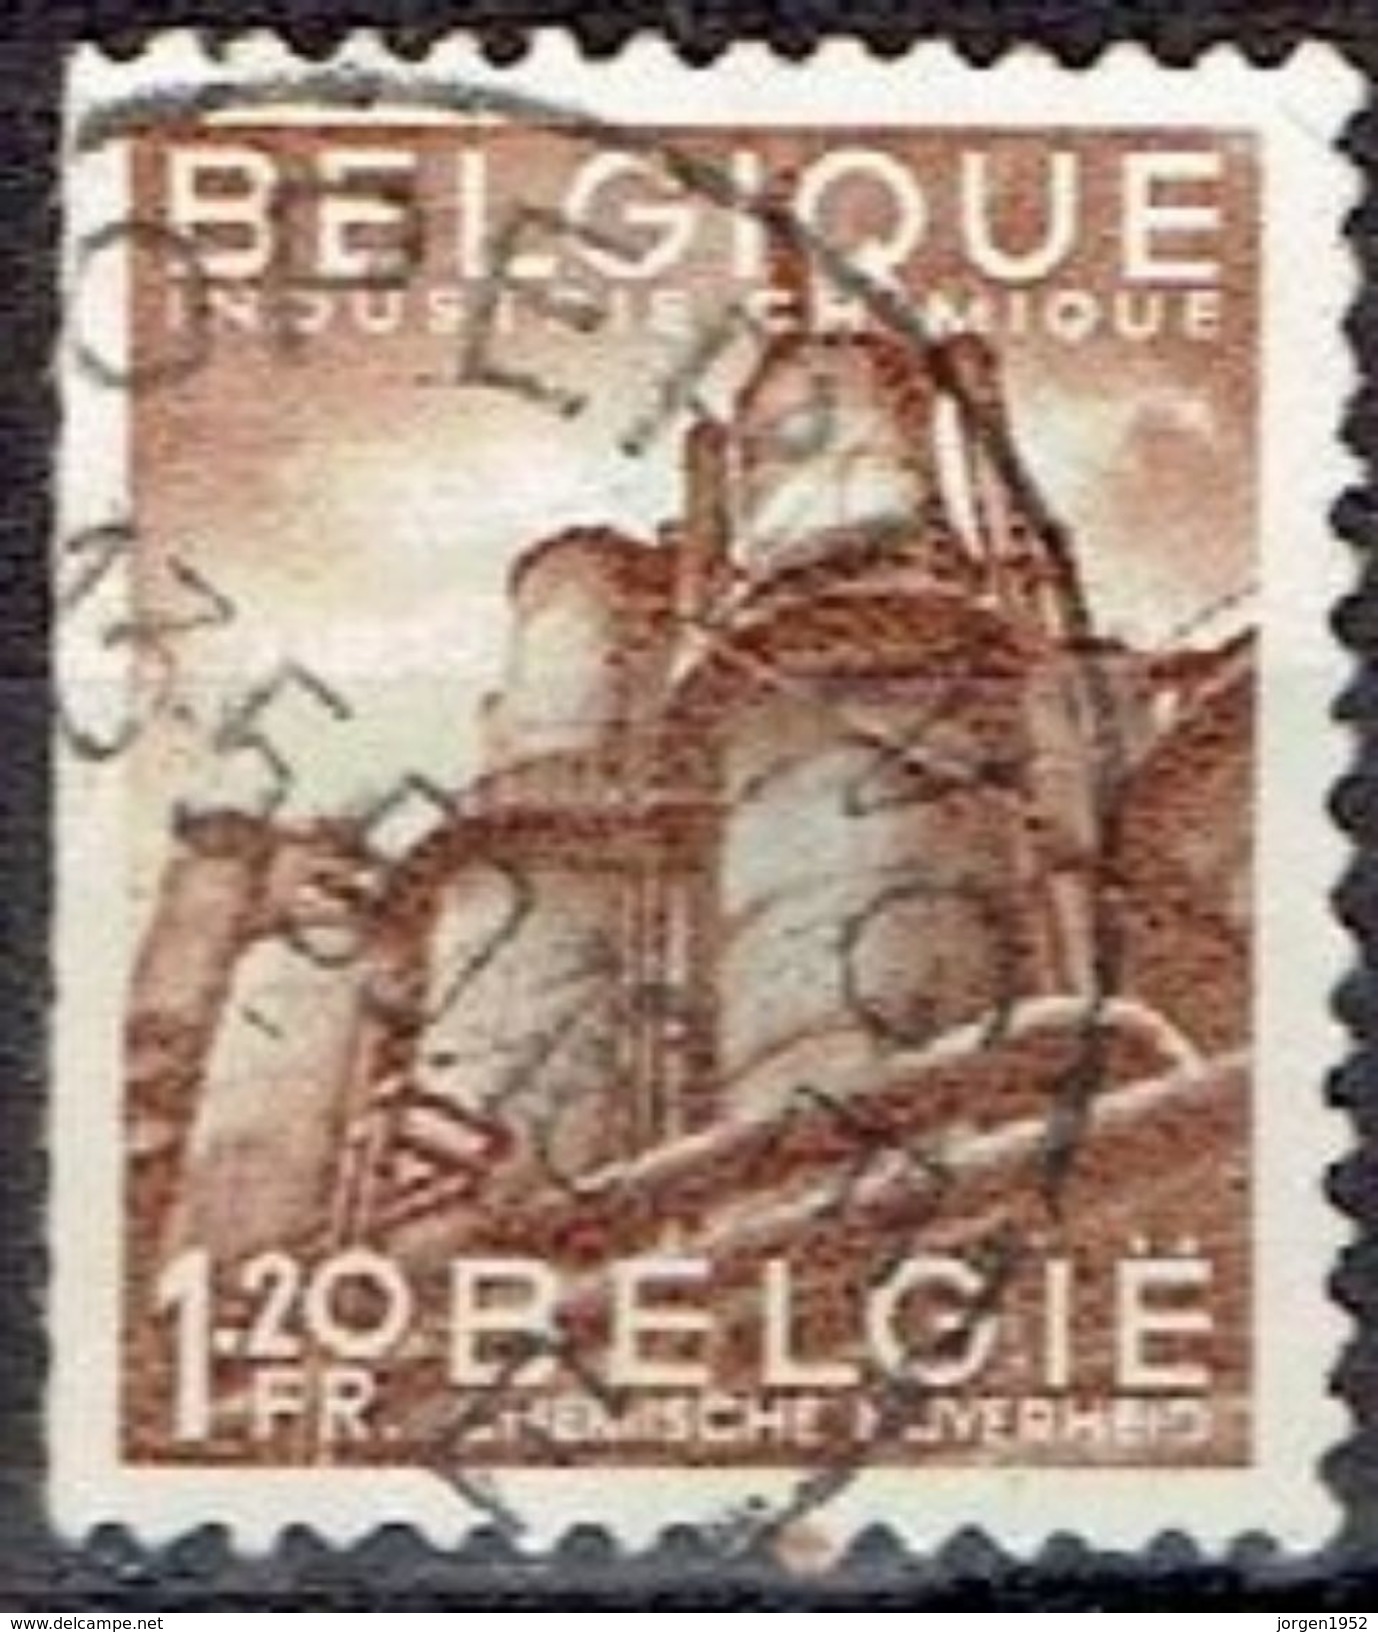 BELGIUM  #  FROM 1948   STAMPWORLD 834 - 1948 Export